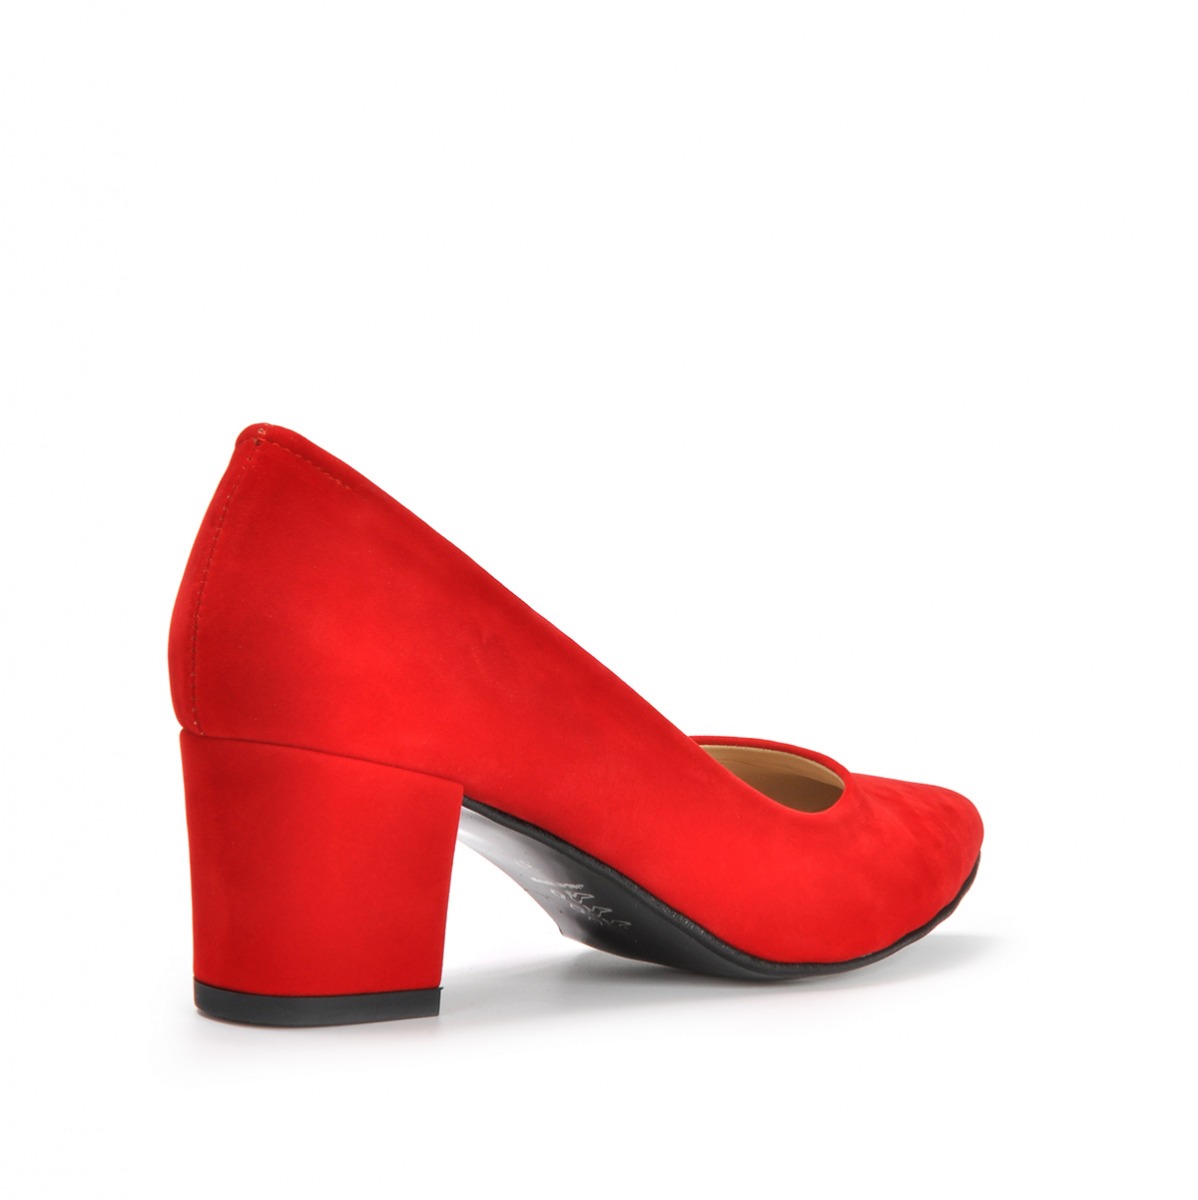 Flo Kadın  Kırmızı-Süet Klasik Topuklu Ayakkabı VZN19-111K. 4